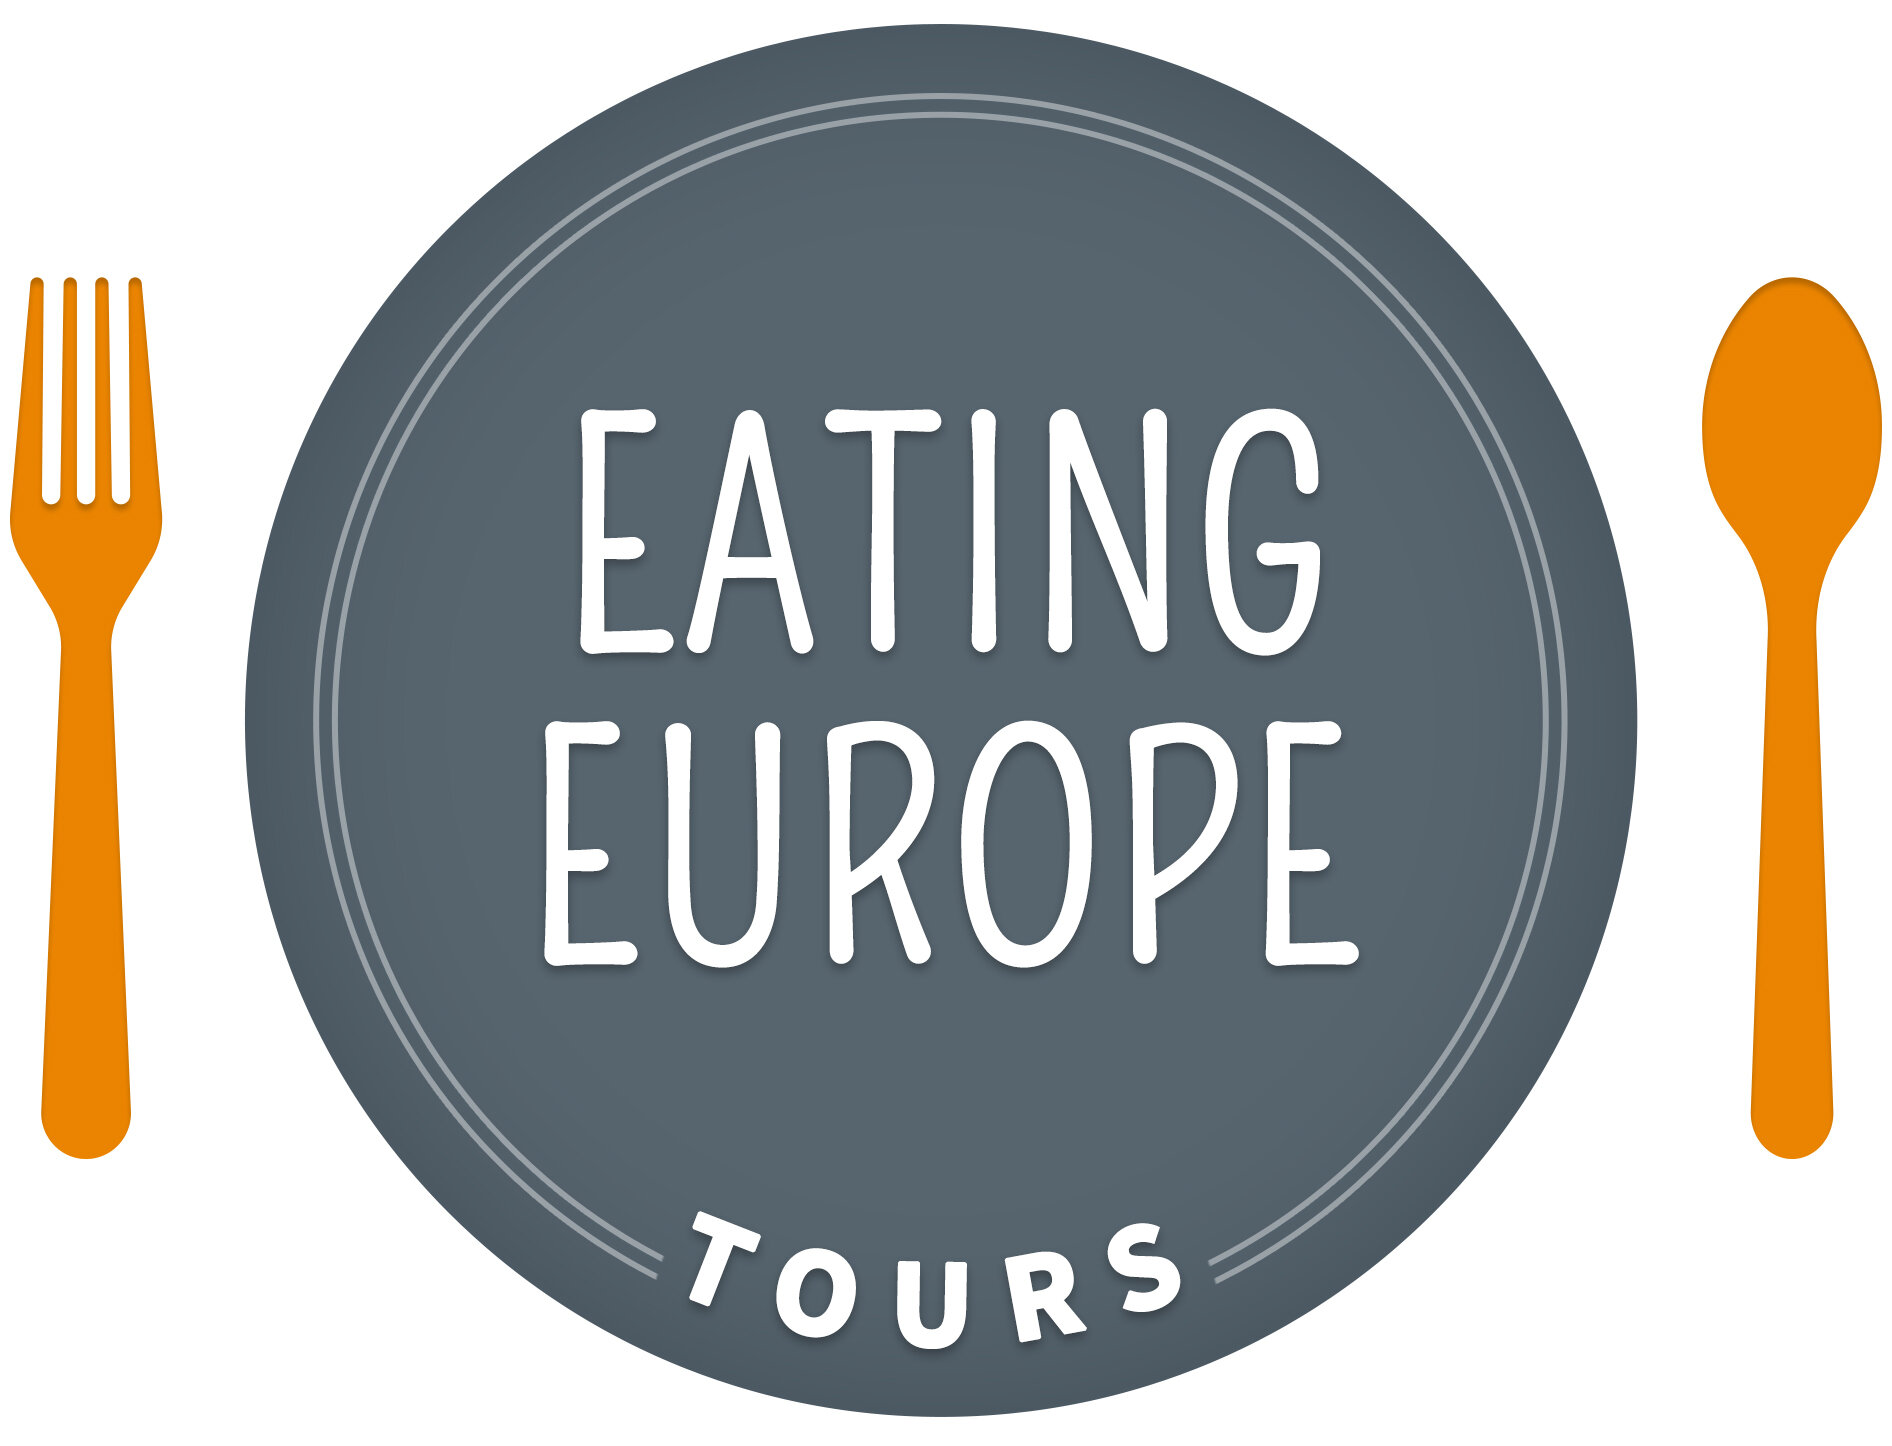 Eating-Europe-Tours.jpg